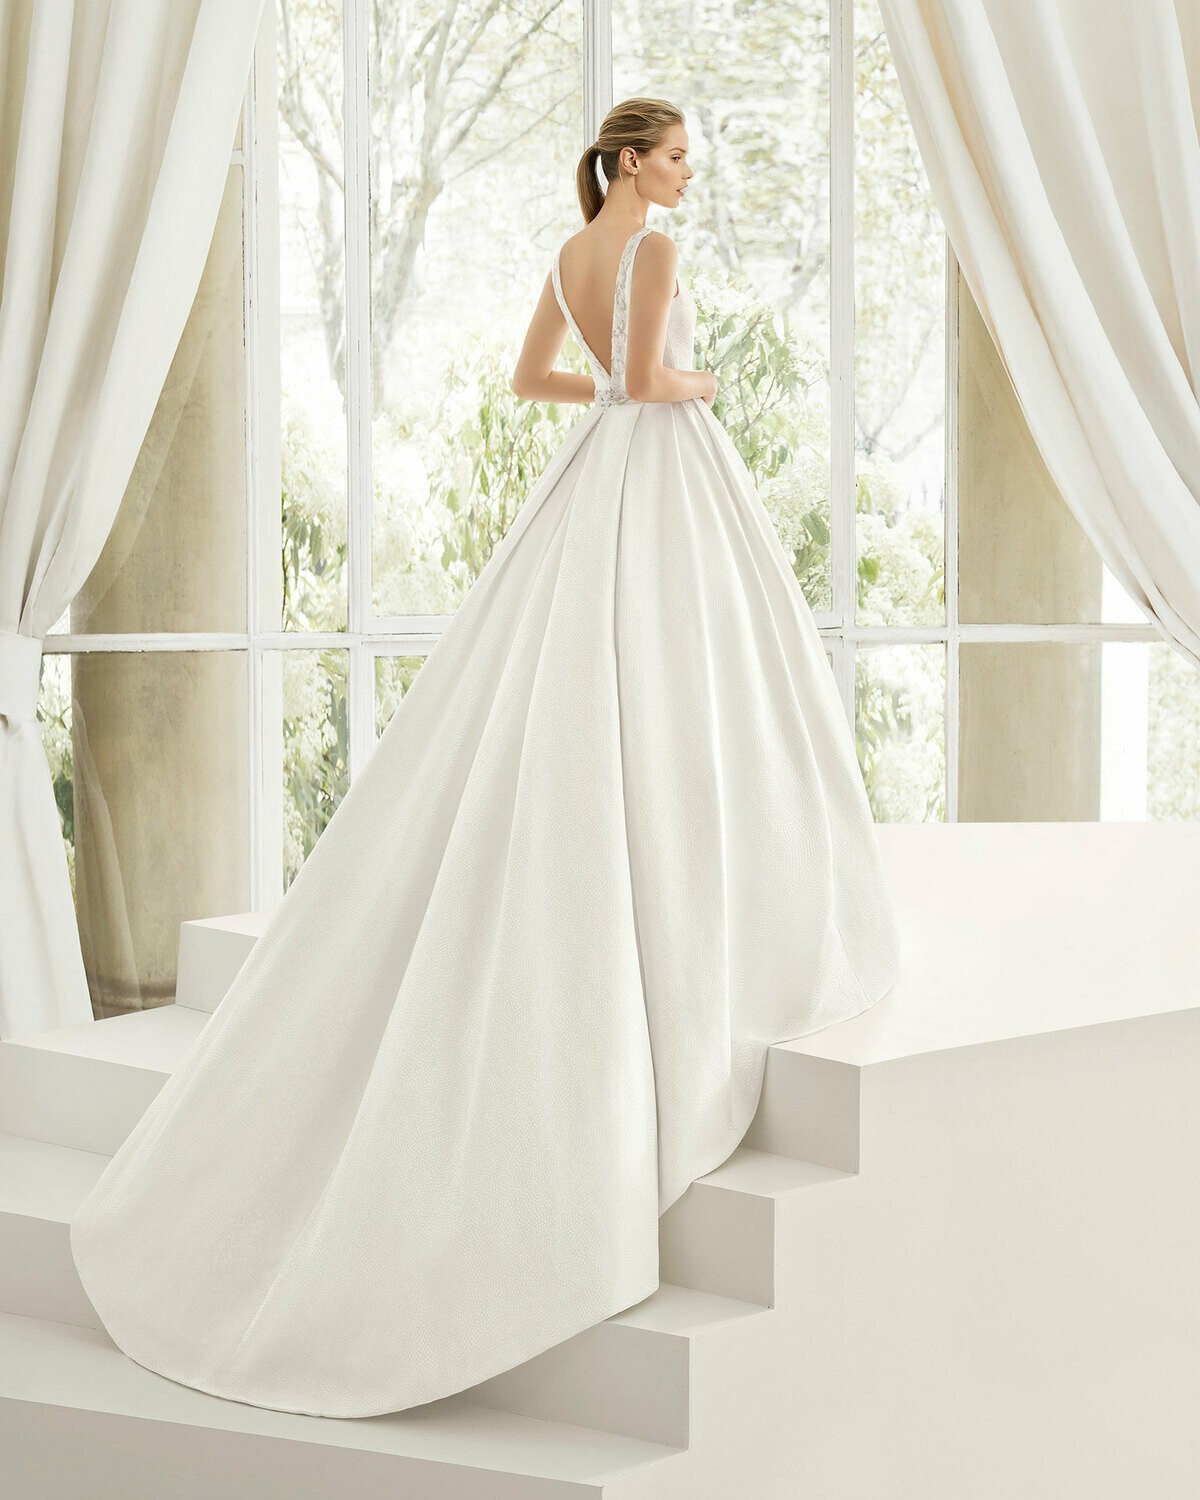 NAMIBIA - abito da sposa collezione 2020 - Rosa Clarà Couture